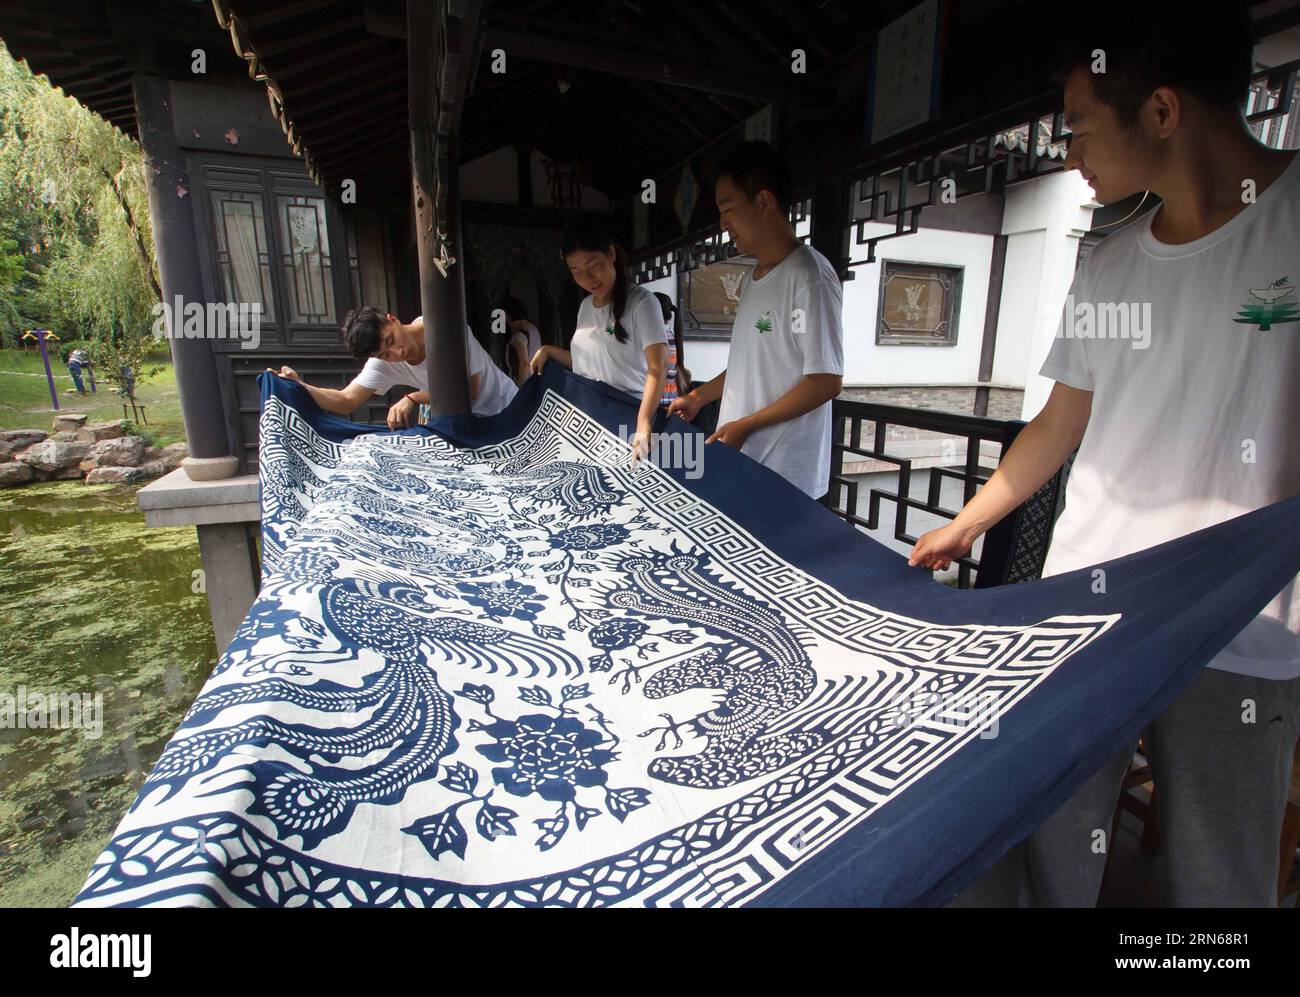 NANTONG, 15 luglio 2015 -- studenti universitari dell'Istituto di tecnologia di Pechino asciugano il calico blu che hanno fatto al Museo Blue Calico di Nantong, nella provincia di Jiangsu della Cina orientale, 15 luglio 2015. Gli studenti universitari sono venuti al Blue Calico Museum per sperimentare l'artigianato della produzione di Blue calico durante le loro vacanze estive. (Zwx) CHINA-JIANGSU-NANTONG-BLUE CALICO(CN) HuangxZhe PUBLICATIONxNOTxINxCHN Nantong 15 luglio 2015 studenti universitari dell'Istituto di tecnologia di Pechino asciugano il calico blu che hanno realizzato AL Museo Blue Calico di Nantong nella provincia di Jiangsu nella Cina orientale 15 luglio 2015 col Foto Stock